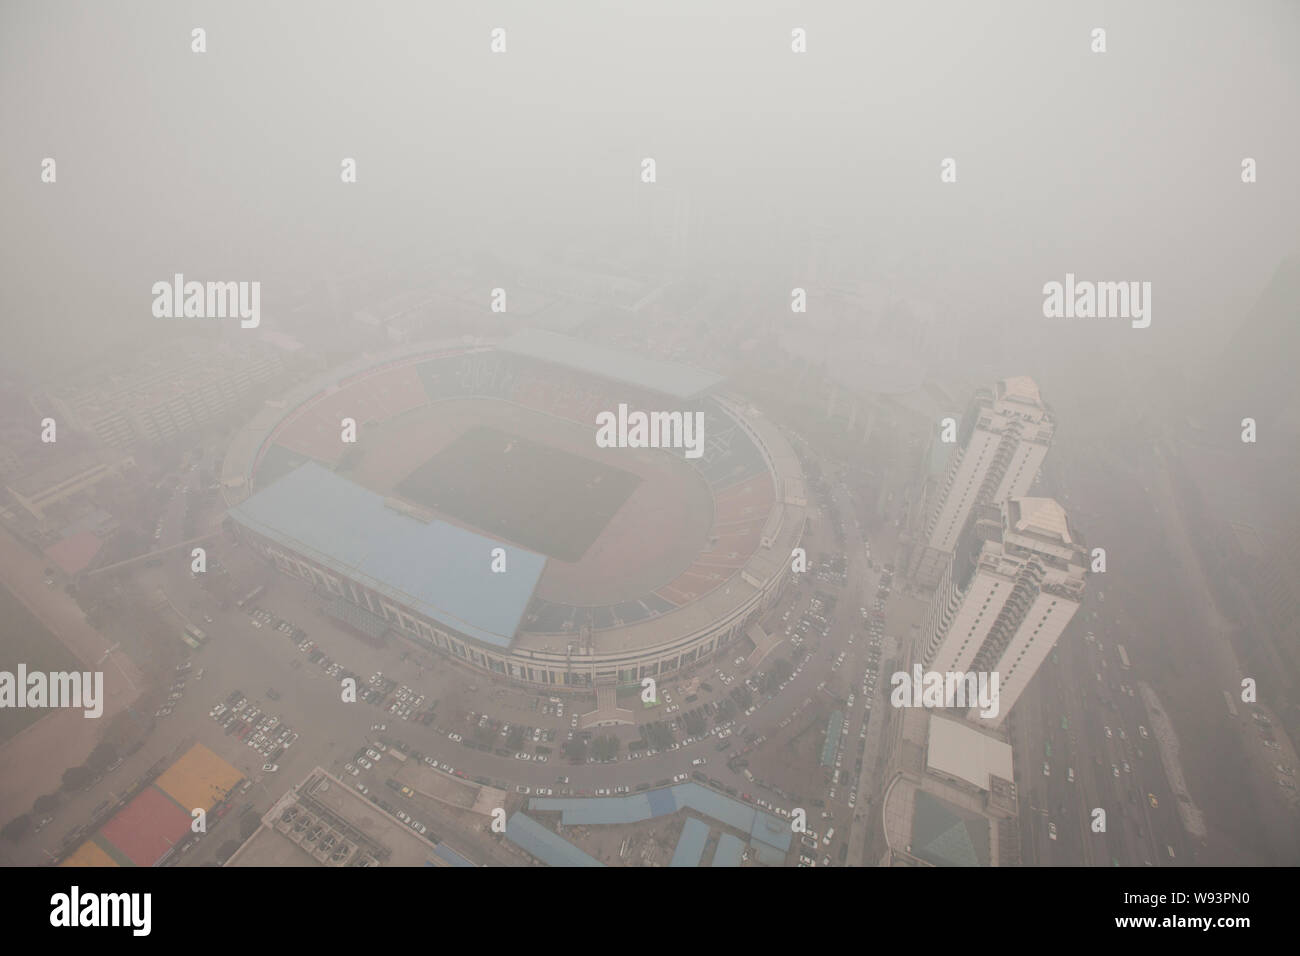 Ein Stadion und residential Apartment Gebäude sind vage in schweren Smog in XiAn city gesehen, in der Provinz Shaanxi im Nordwesten Chinas, 24. Dezember 2013. Himmel Stockfoto